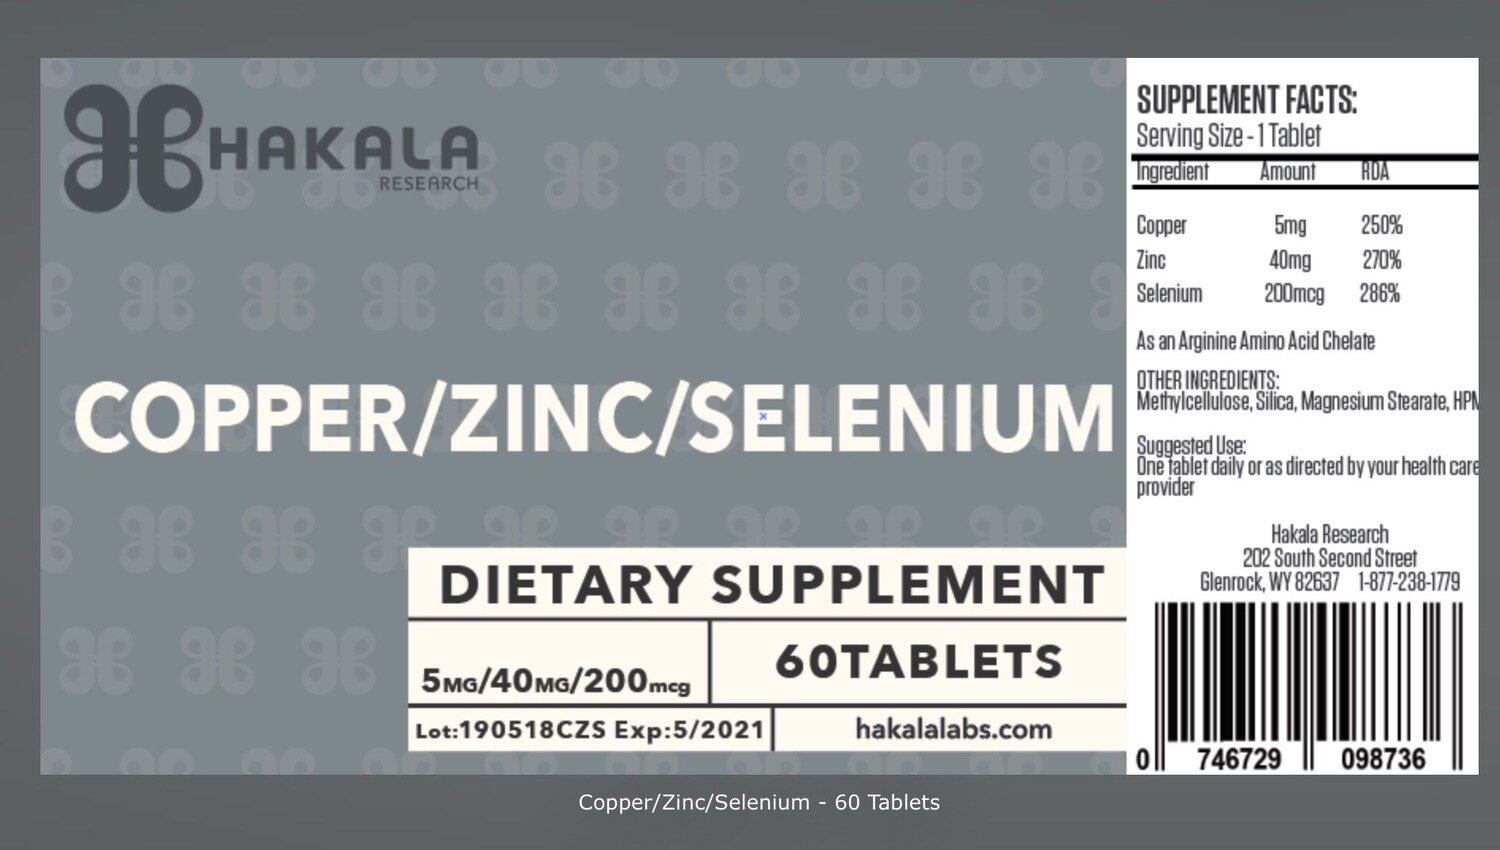 Copper/Zinc/Selenium - 60 Tablets